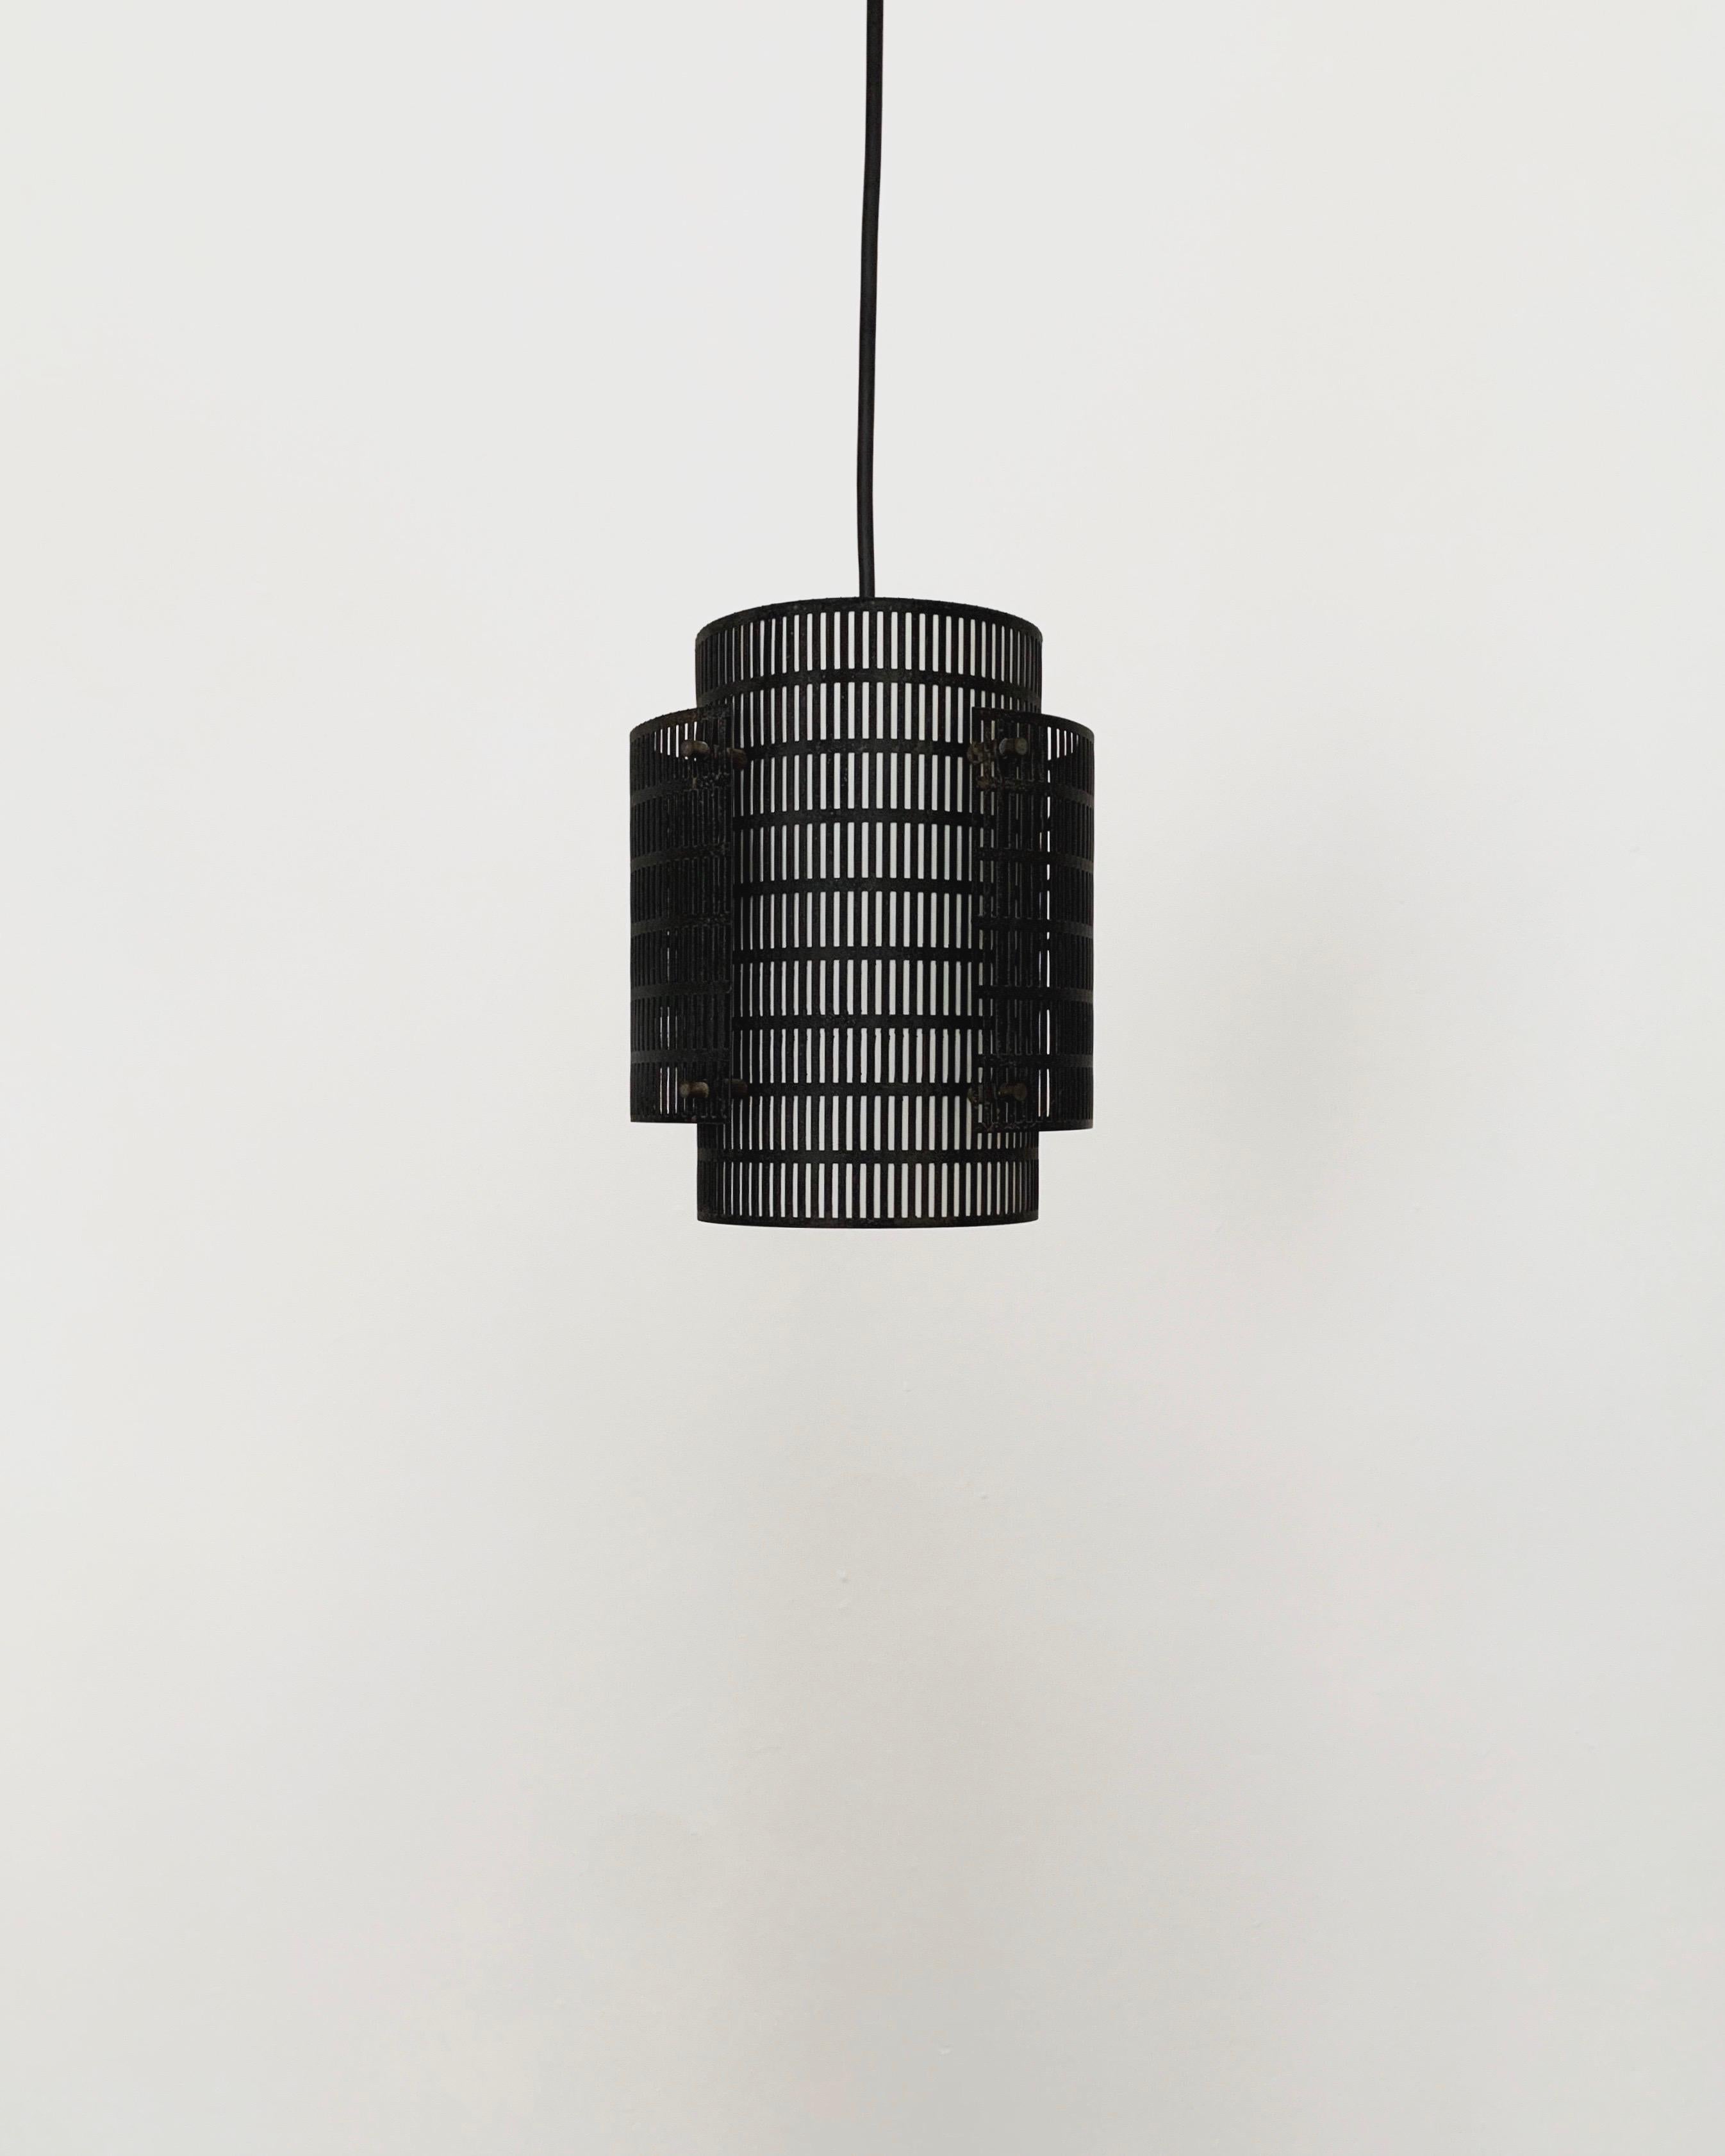 Italian Set of 3 Perforated Metal Pendant Lamps